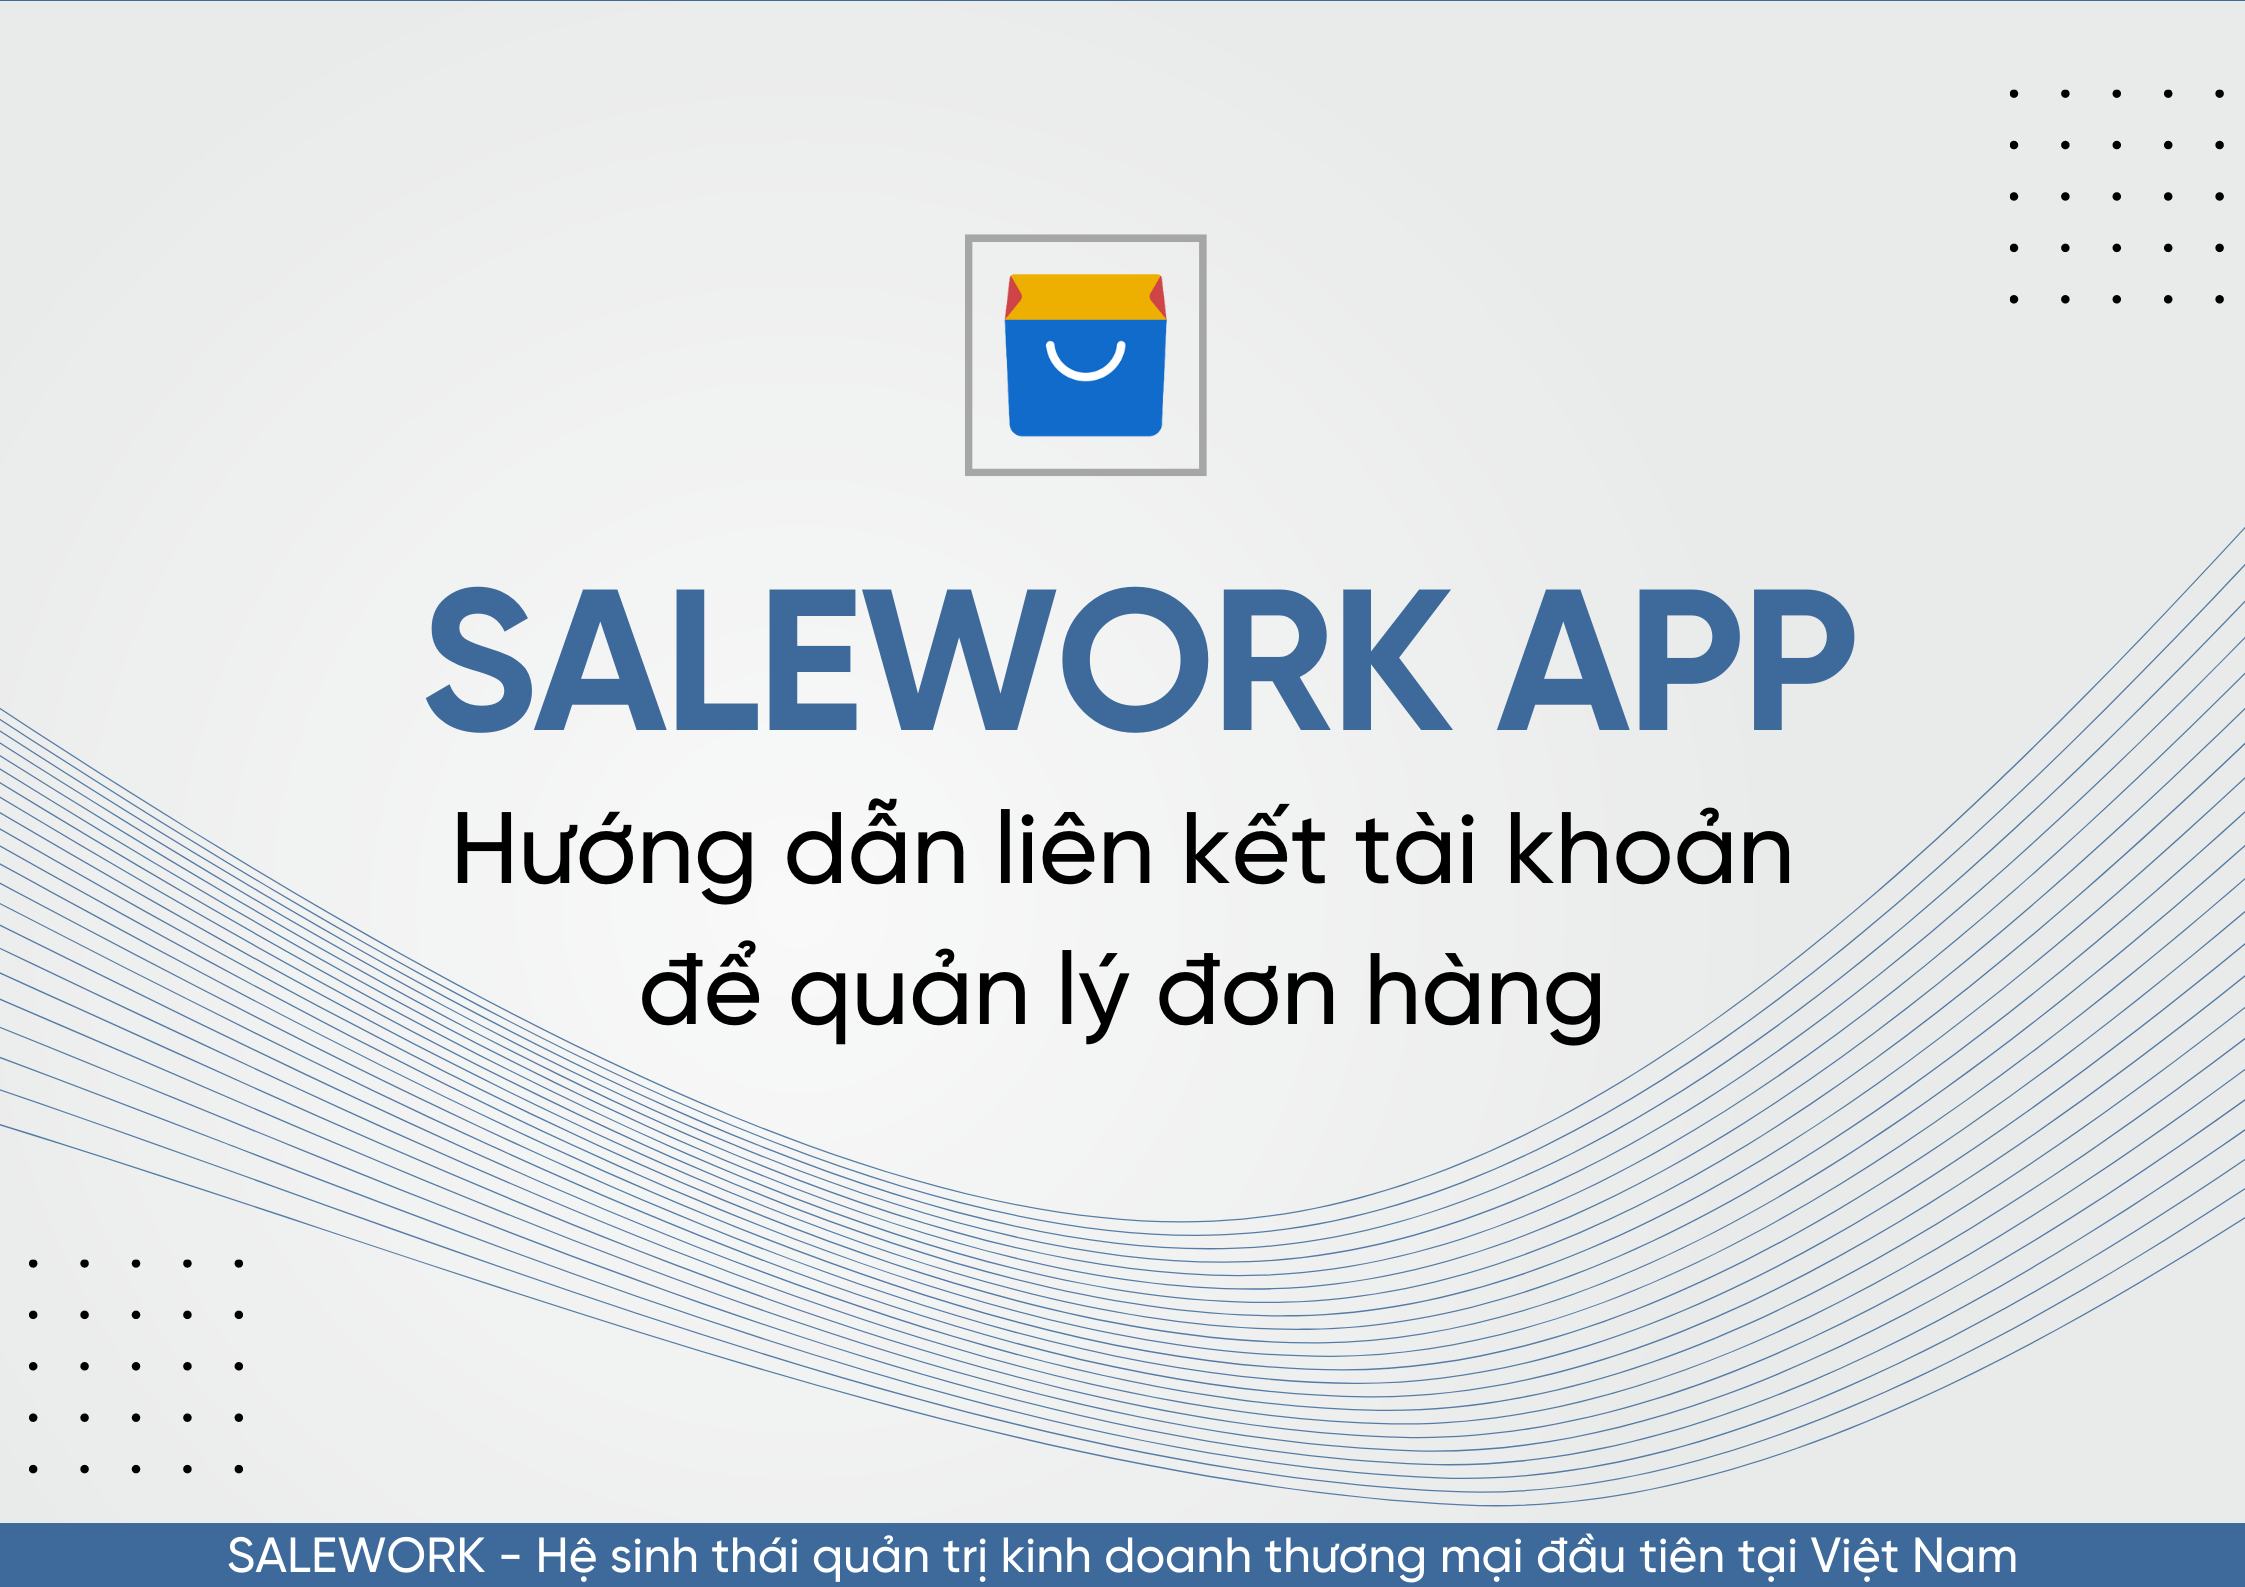 Hướng dẫn liên kết tài khoản để quản lý đơn hàng qua Salework Mobile - 66